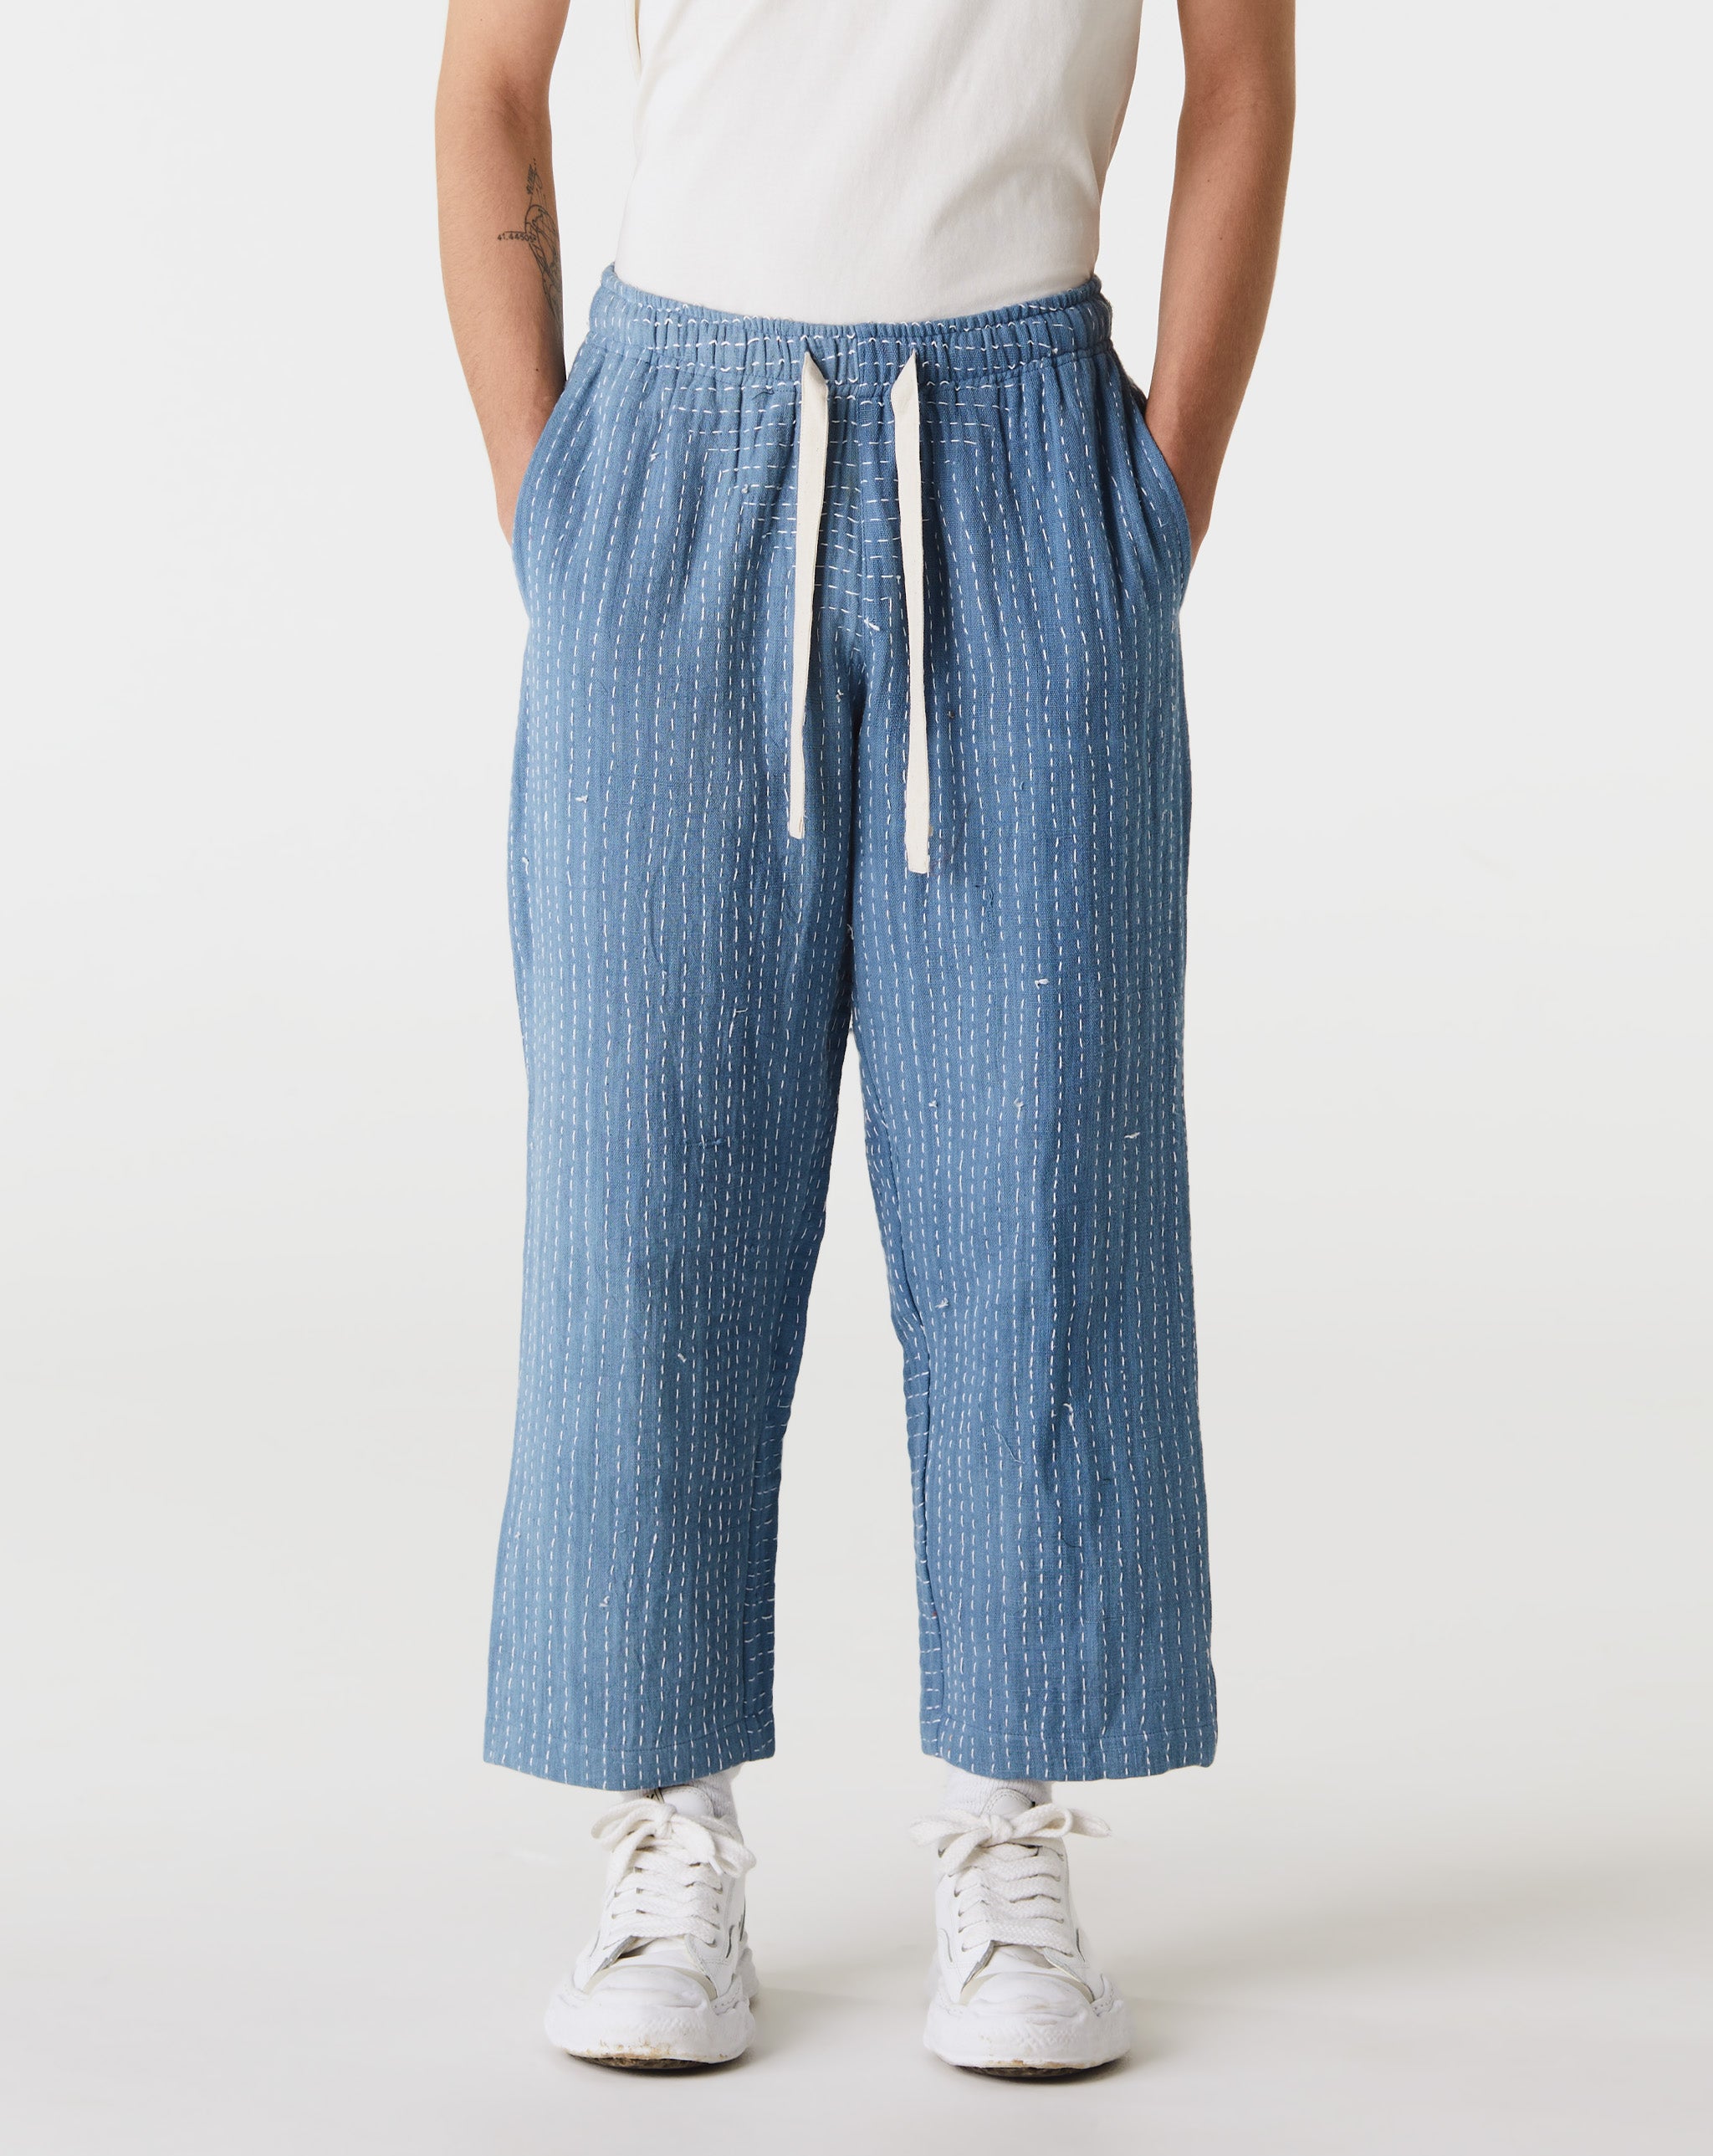 Kartik Research Drawstring Trousers  - XHIBITION